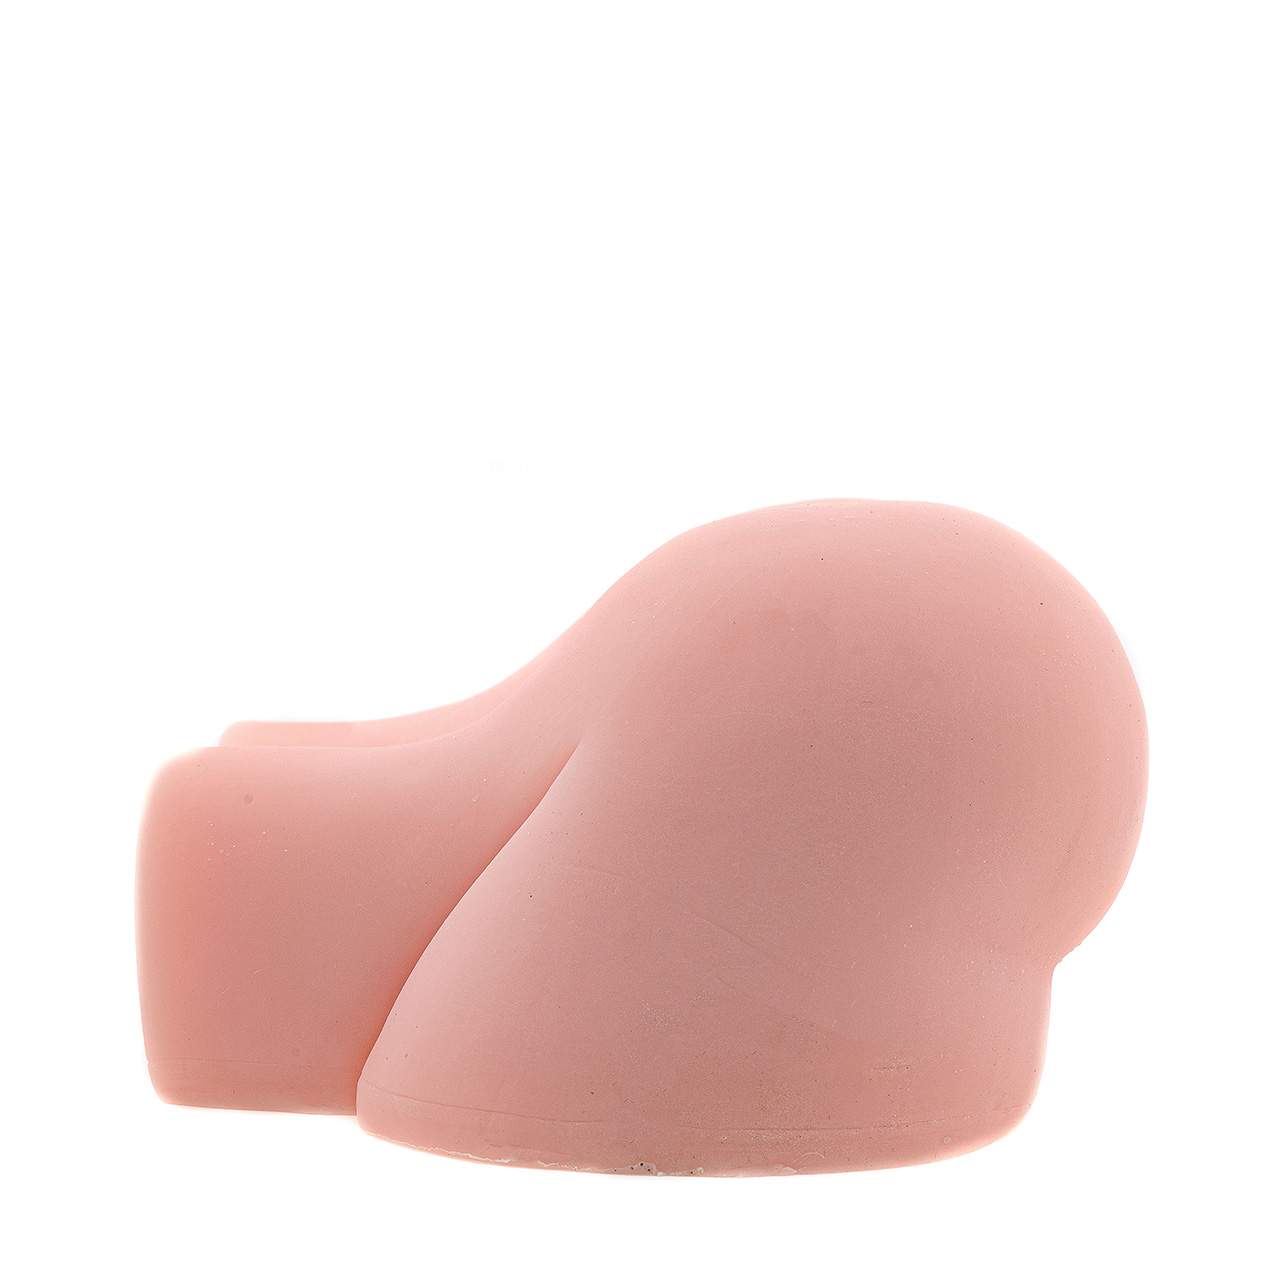 Realistyczny masturbator dla mężczyzn w kształcie wypiętej kobiecej pupy